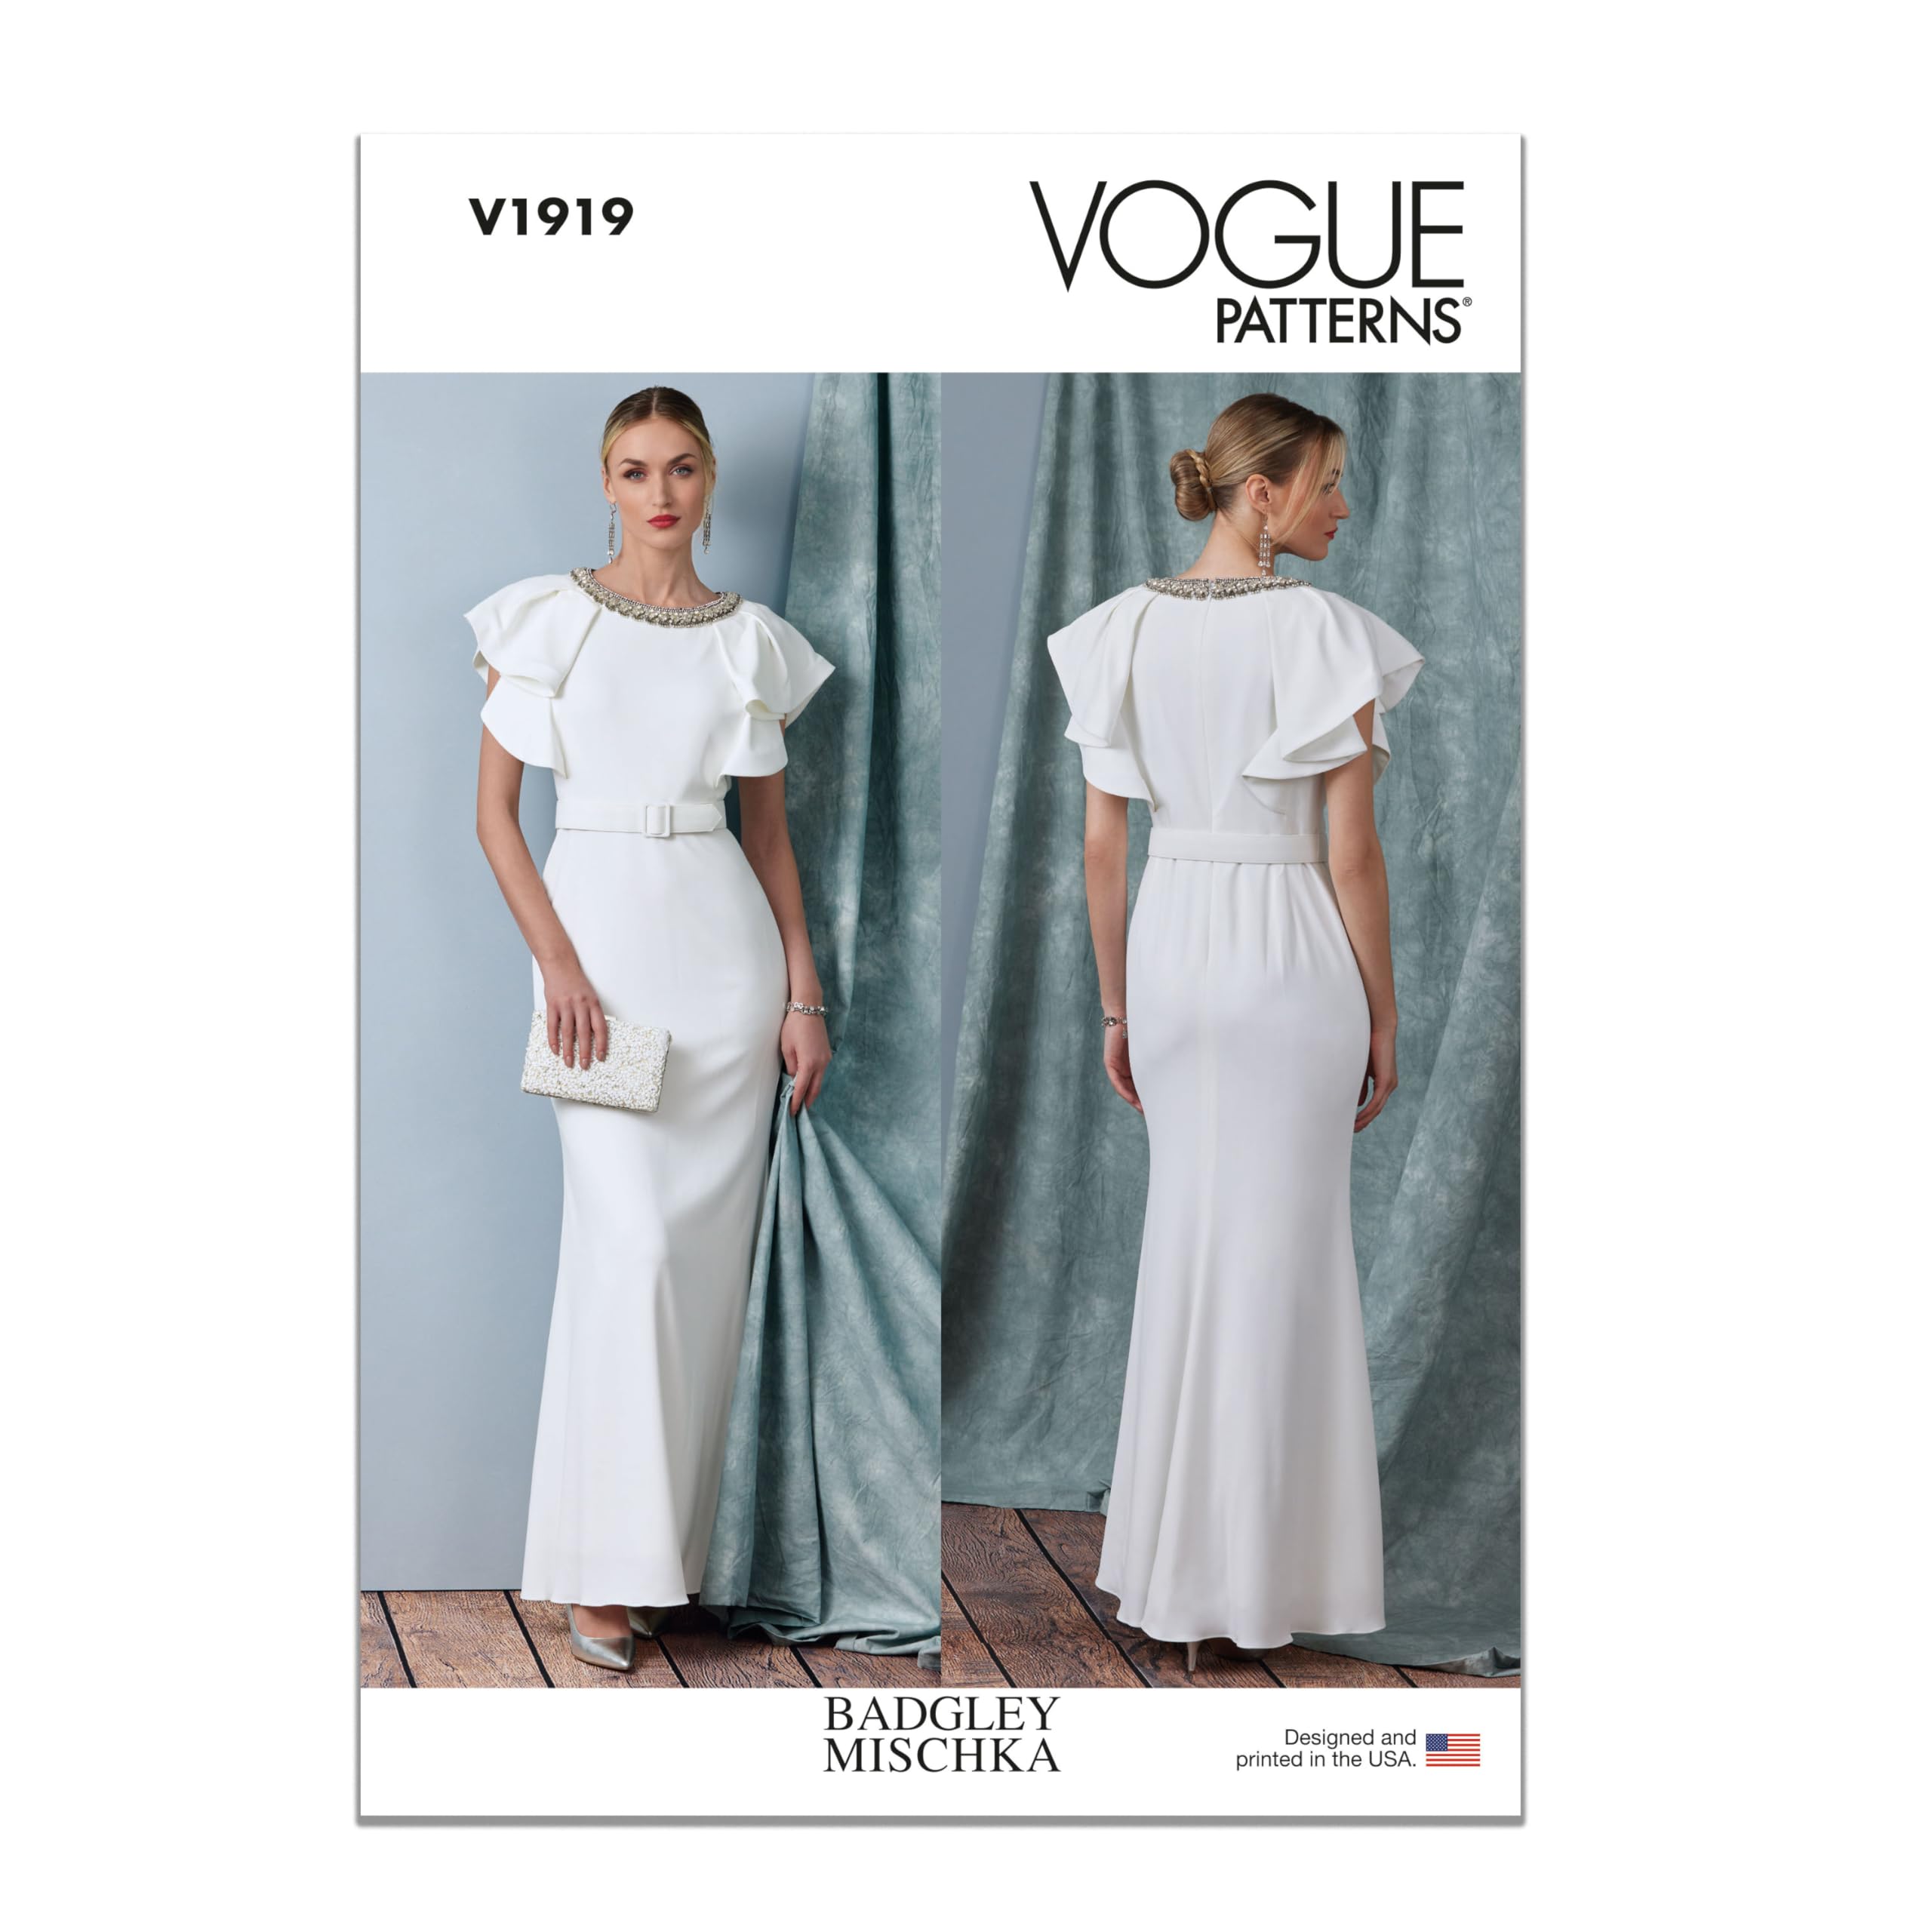 Vogue Schnittmuster-Set für Damenkleid mit Gürtel von Badgley Mischka, Design-Code V1919, Größen 36-38-40-42-44